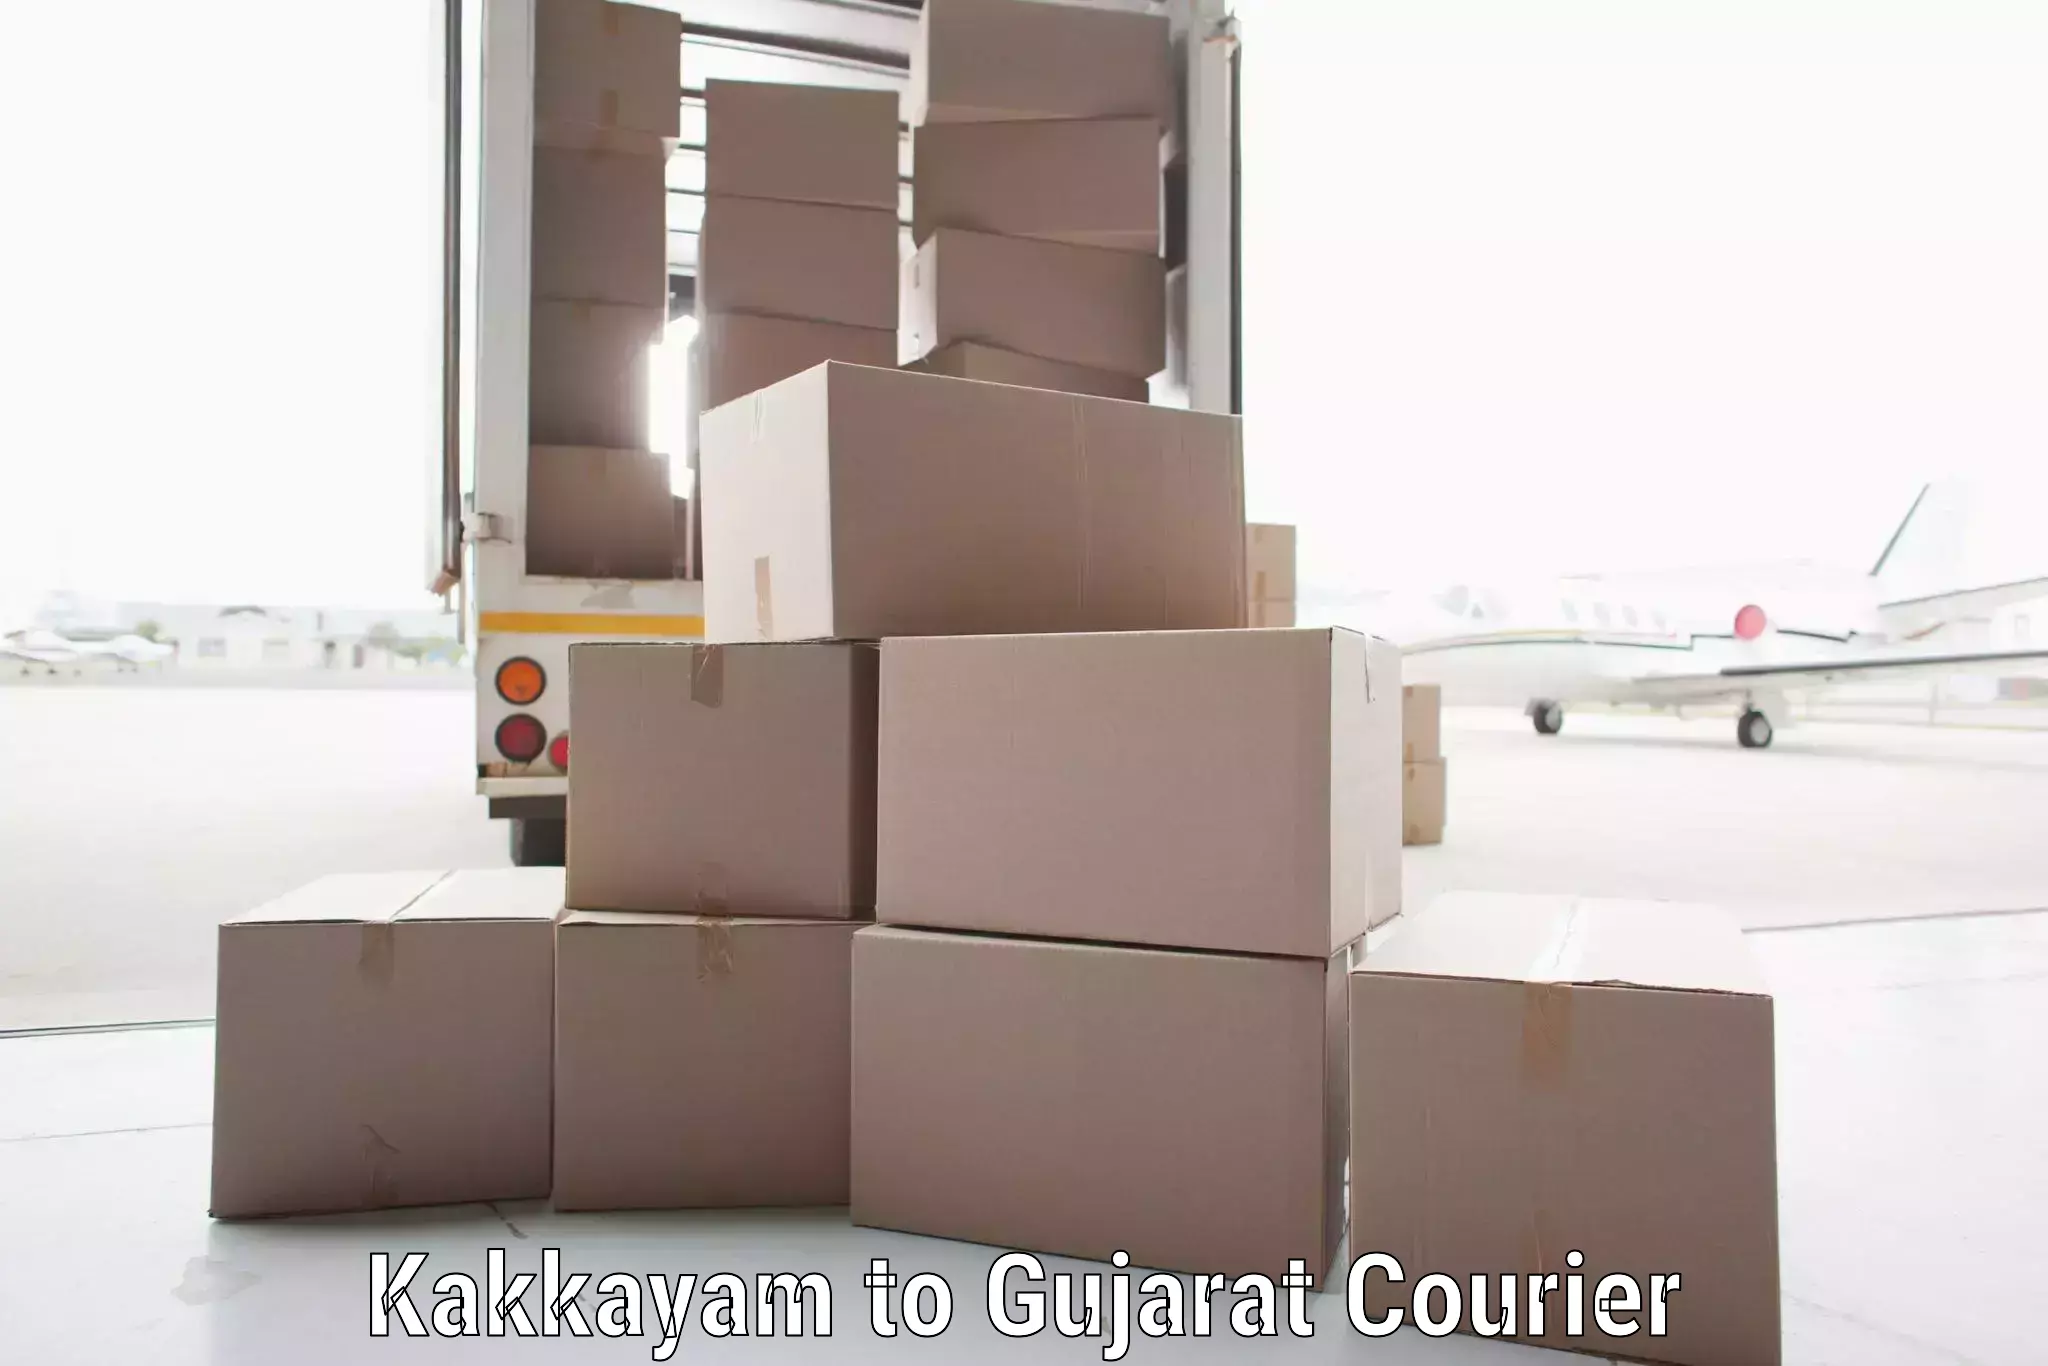 Comprehensive shipping services Kakkayam to Kadana